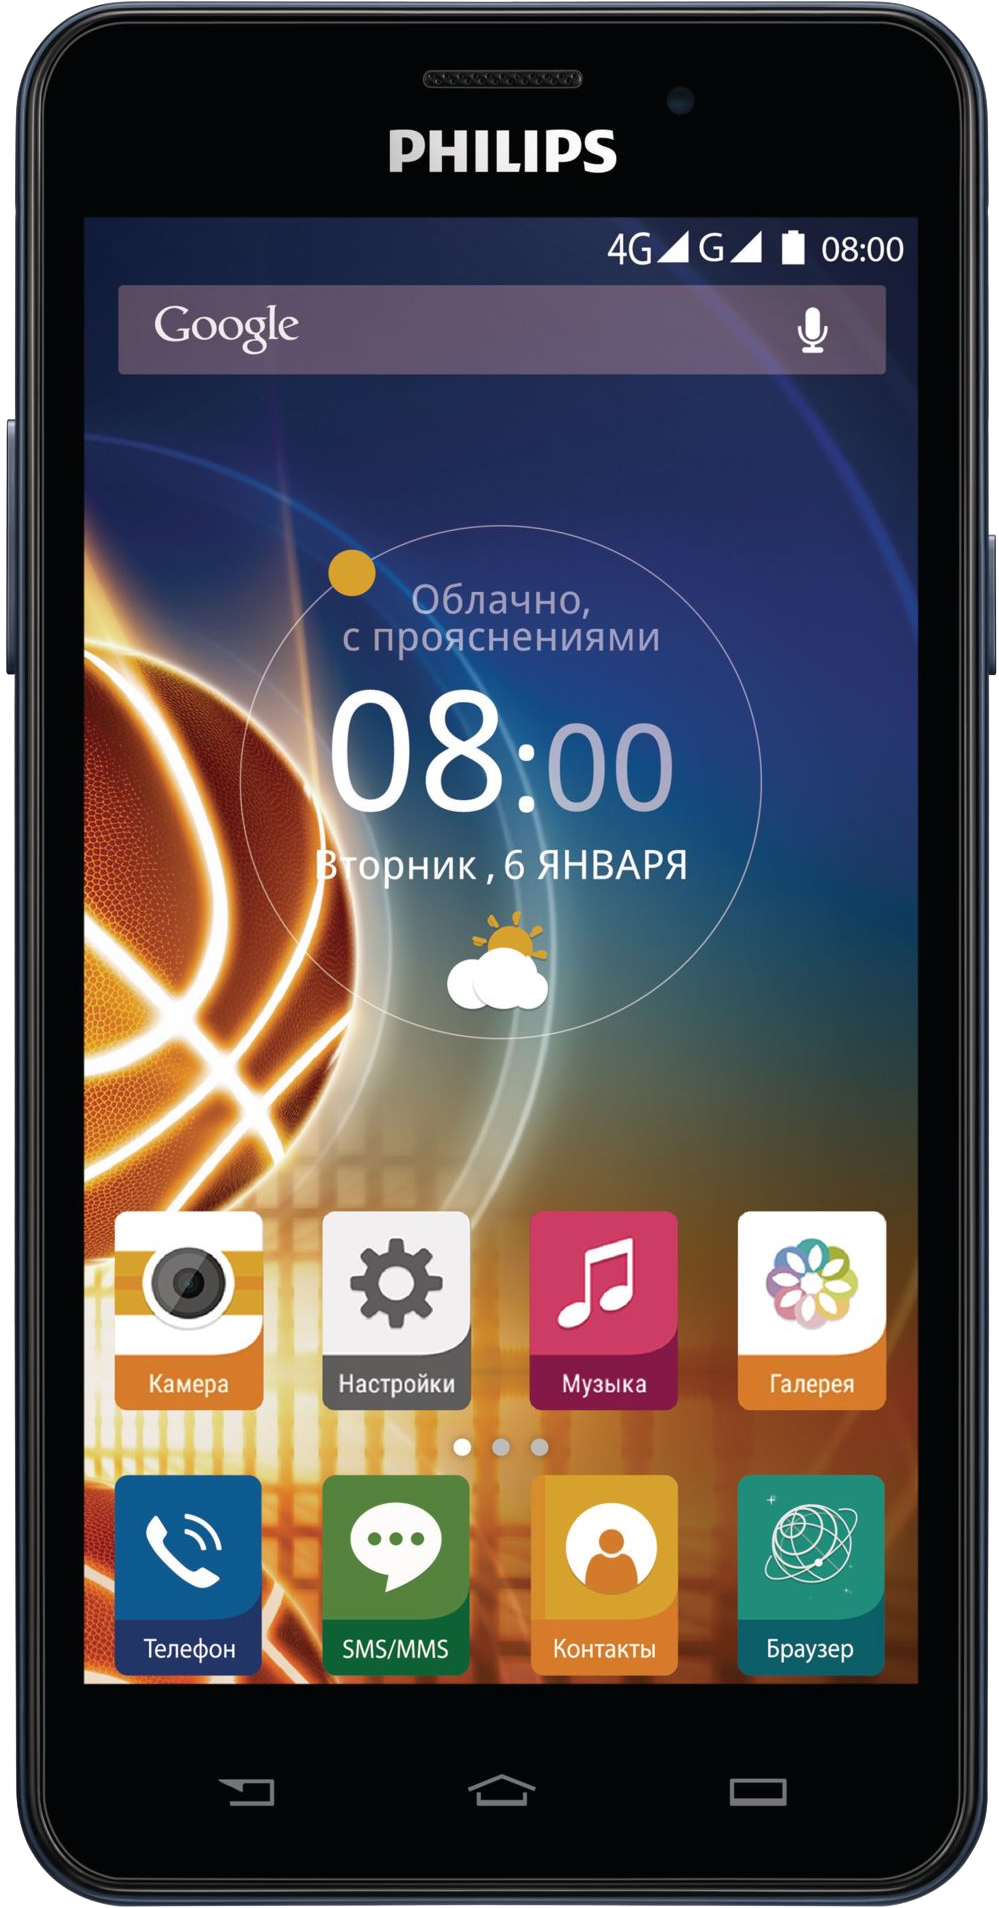 Филипс г. Смартфон Philips Xenium v526 LTE. Philips Xenium смартфон сенсорный. Сенсорный телефон Филипс Xenium v526. Philips Xenium Android 2 SIM.